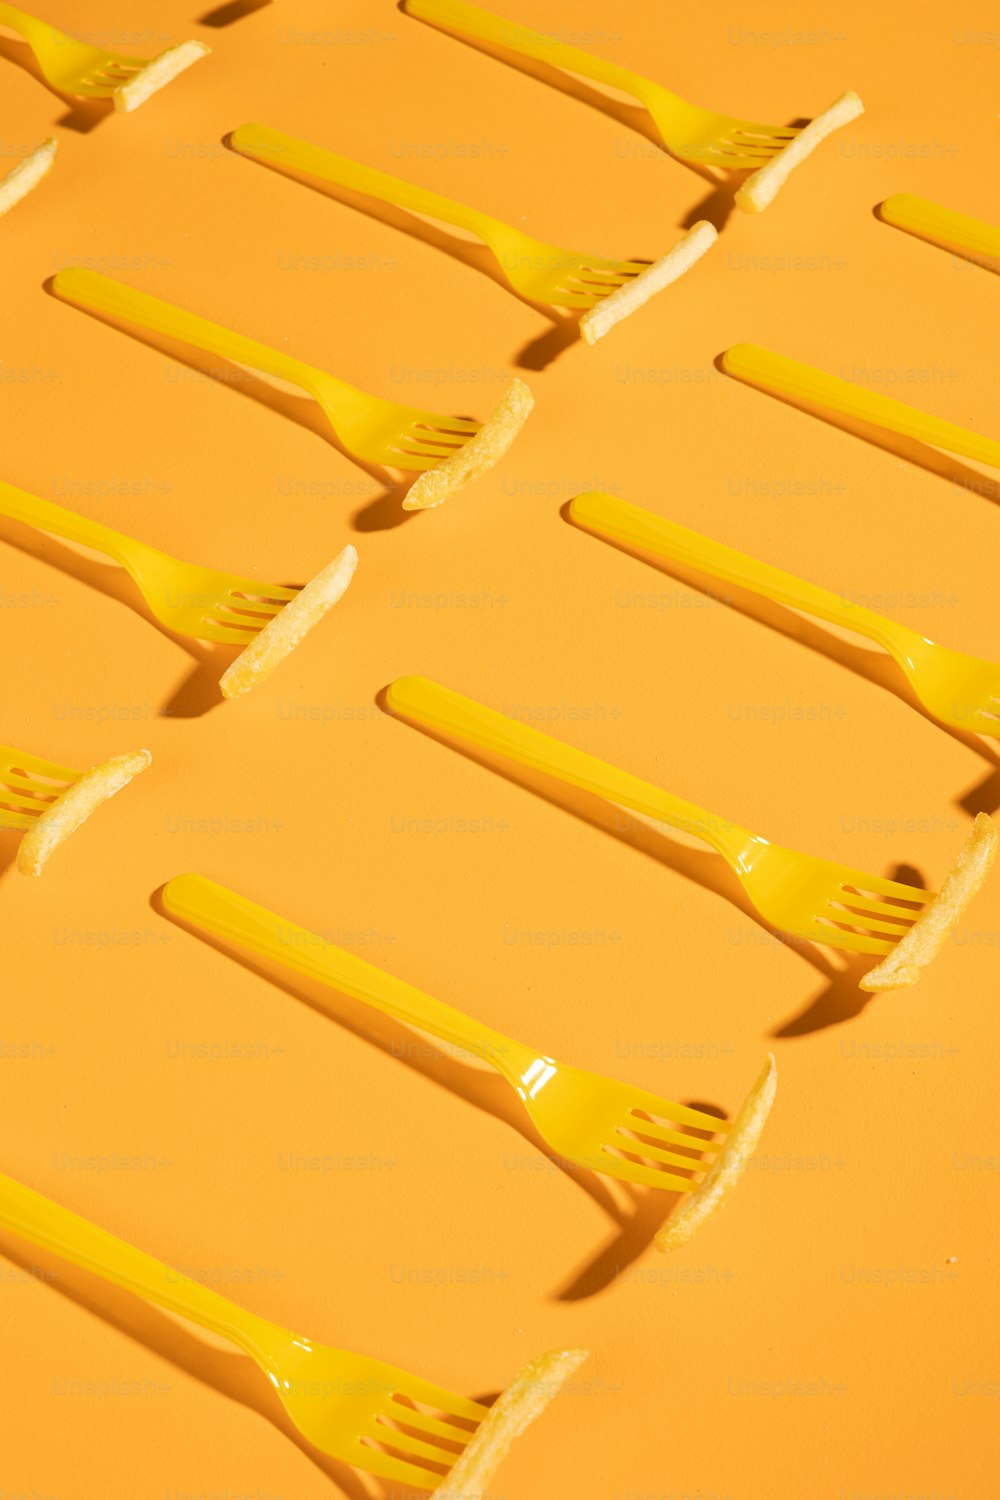 Un grupo de cepillos de dientes amarillos sentados uno encima del otro